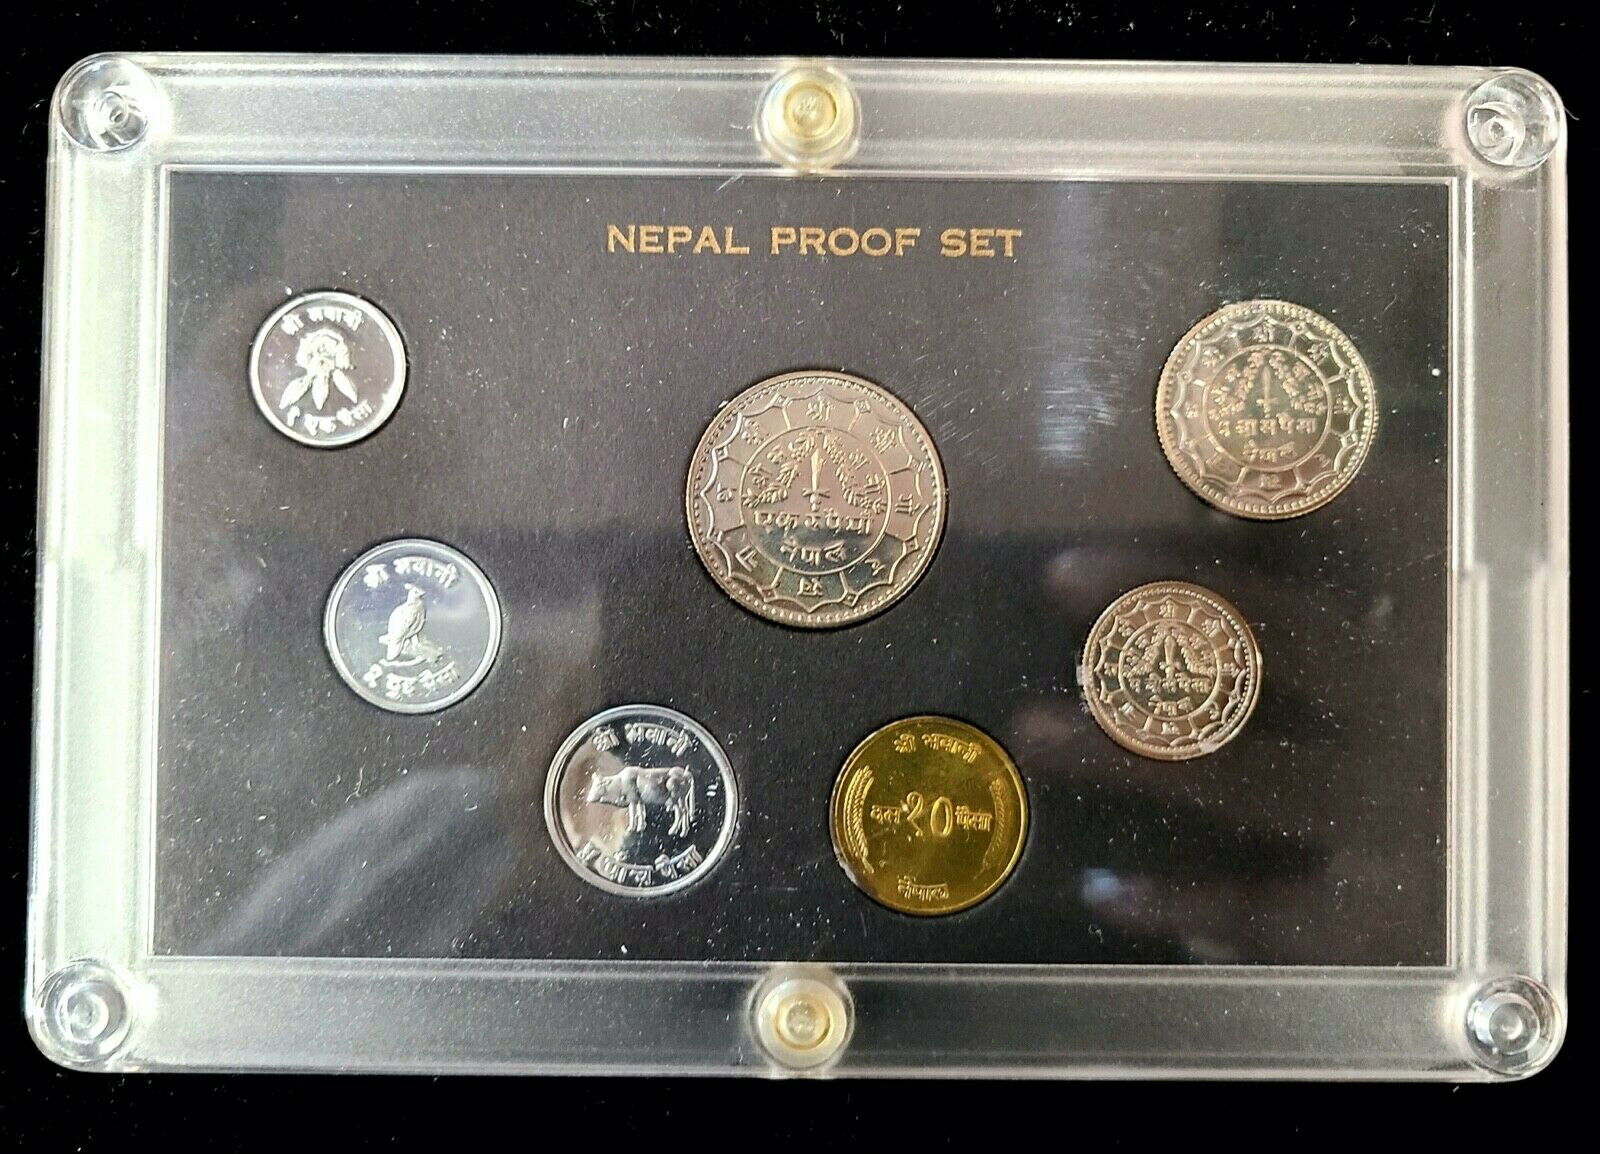  アンティークコイン コイン 金貨 銀貨  1974 VS2031 Nepal 7 Coin Proof Set OGP Paisa Rupee Cow, Pheasant, Rhododendron